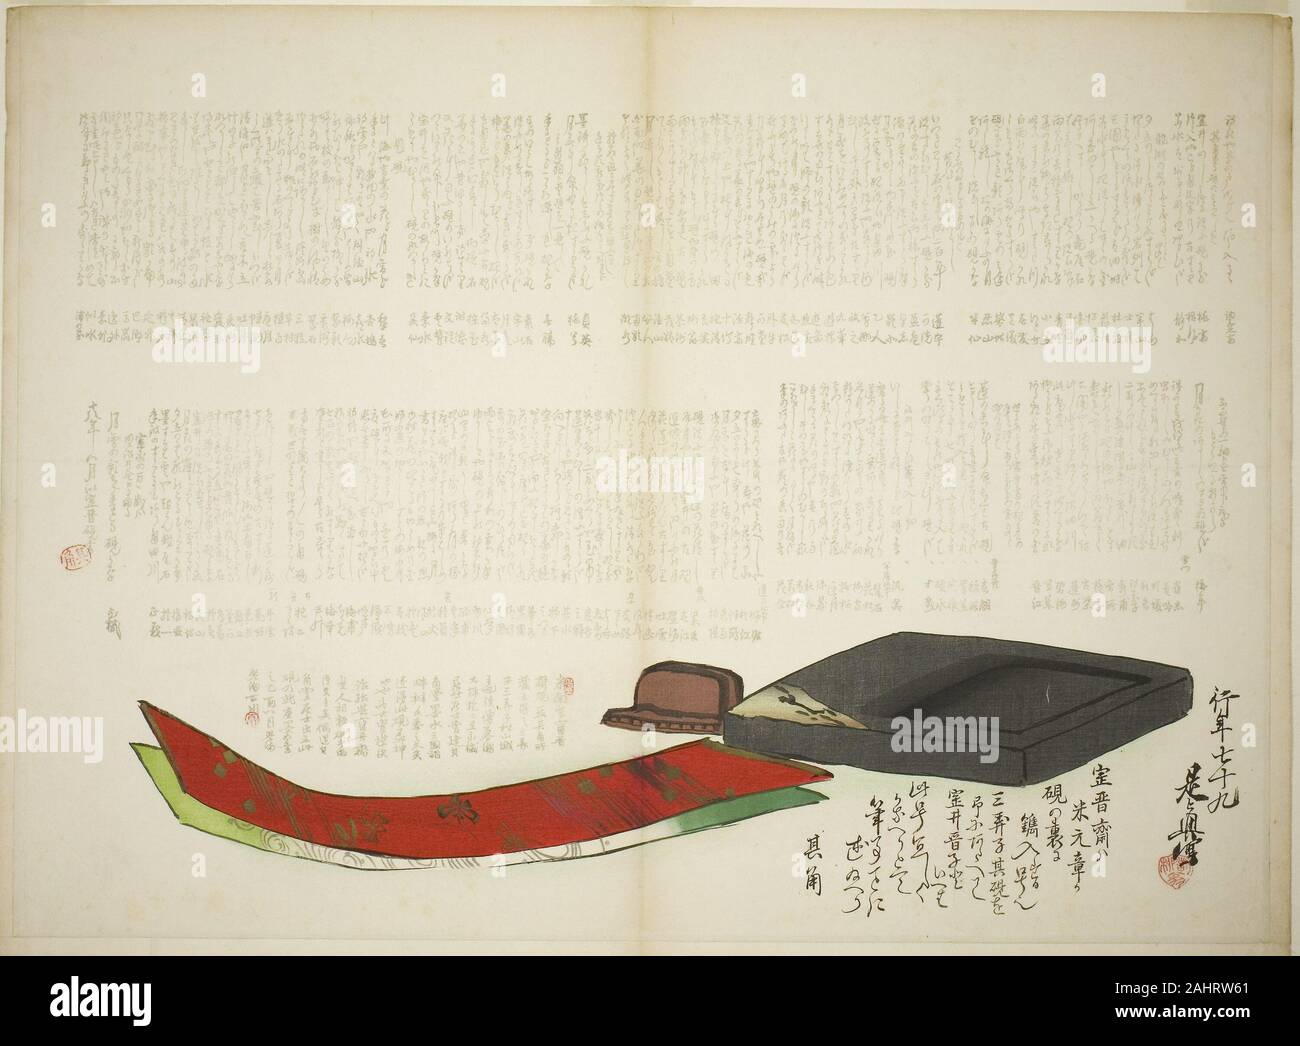 Shibata Zeshin. Couches de Kikaku la poésie. 1885. Le Japon. Gravure sur  bois en couleur ; surimono imprimer ce complexe représente un hommage au  grand poète de haïku japonais Takarai Kikaku (1661-1707)